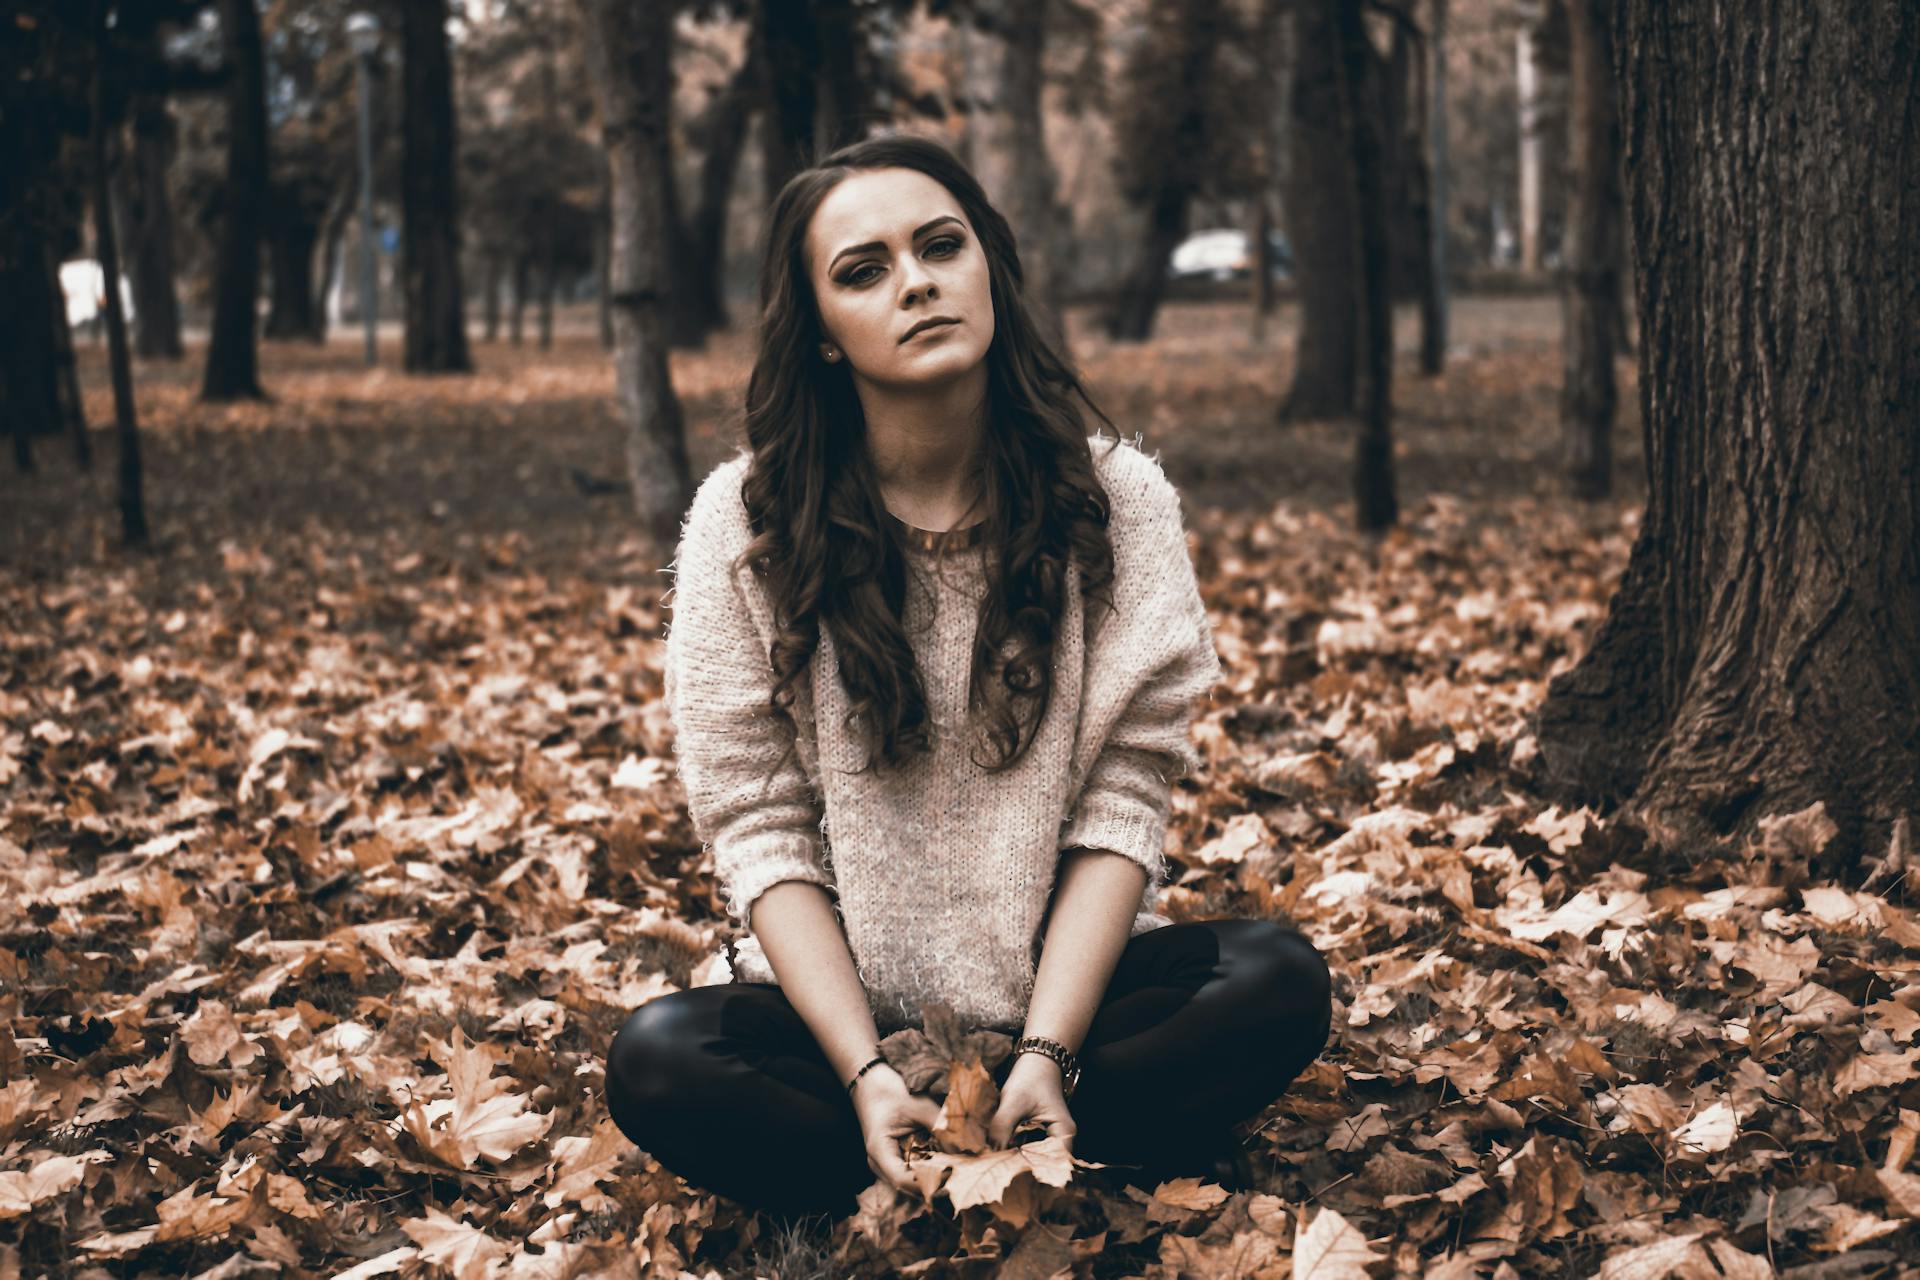 Eine junge Frau, die in einem Wald sitzt und heruntergefallene Blätter hält | Quelle: Pexels